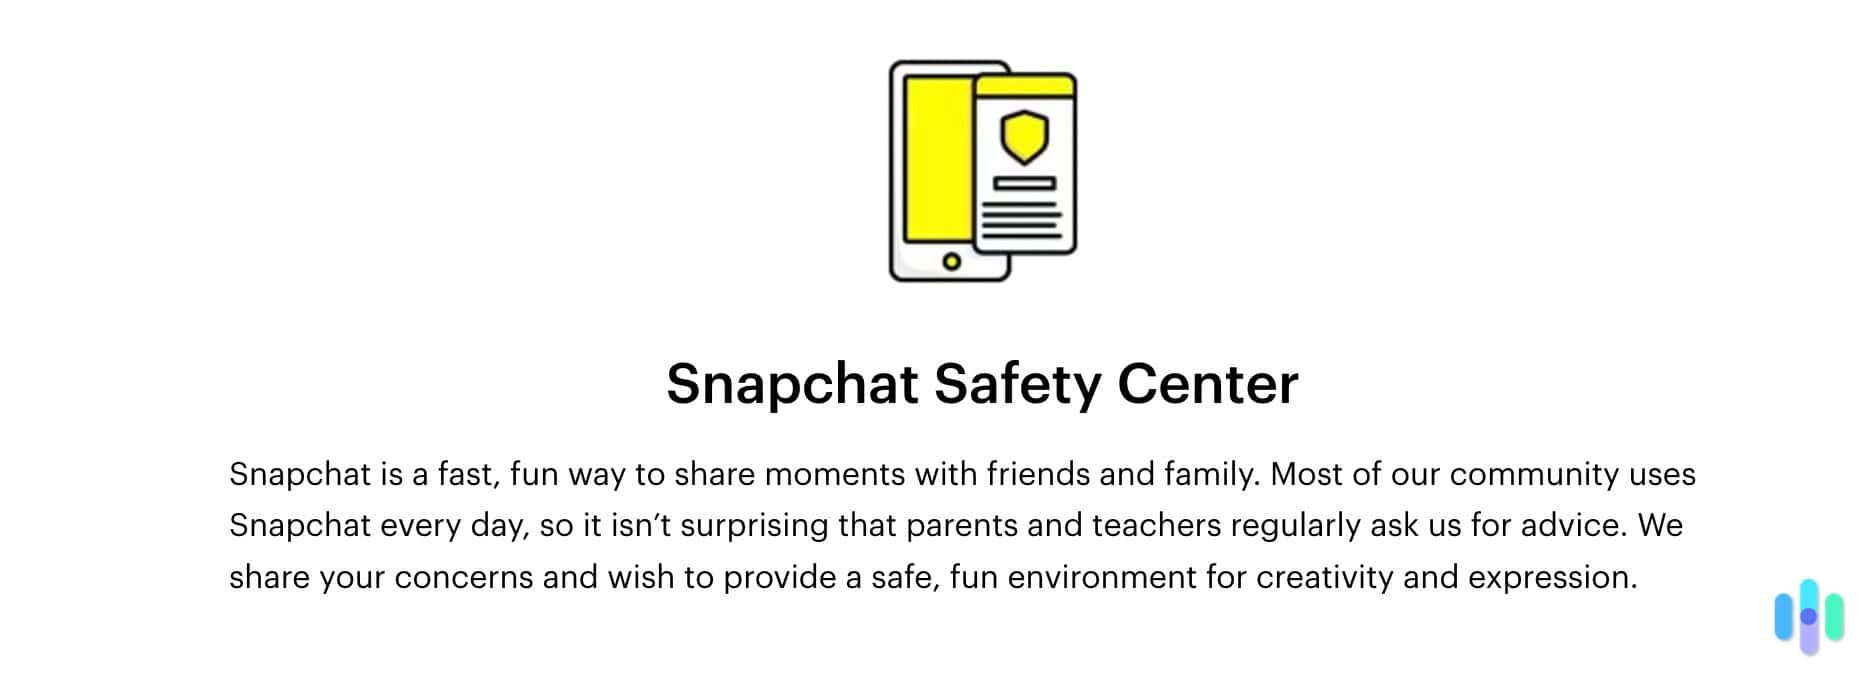 Snapchat Safety Center